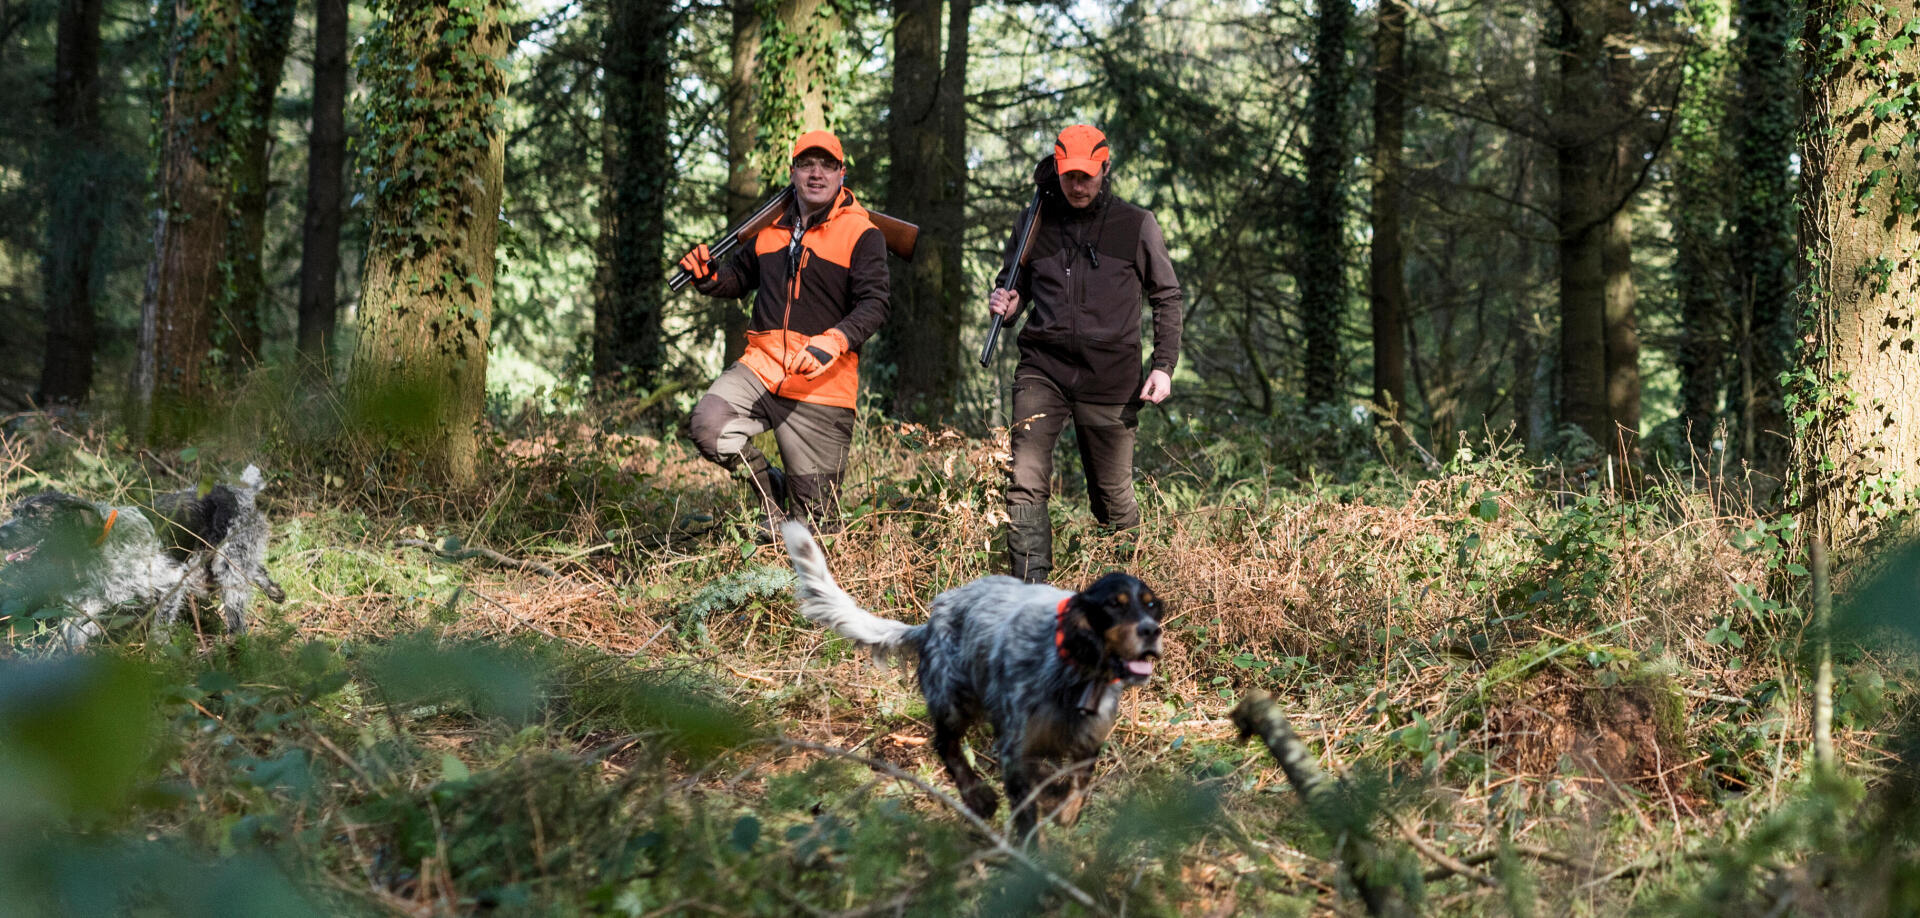 Ideias de presentes para praticantes de caça à galinhola e caça menor em bosque